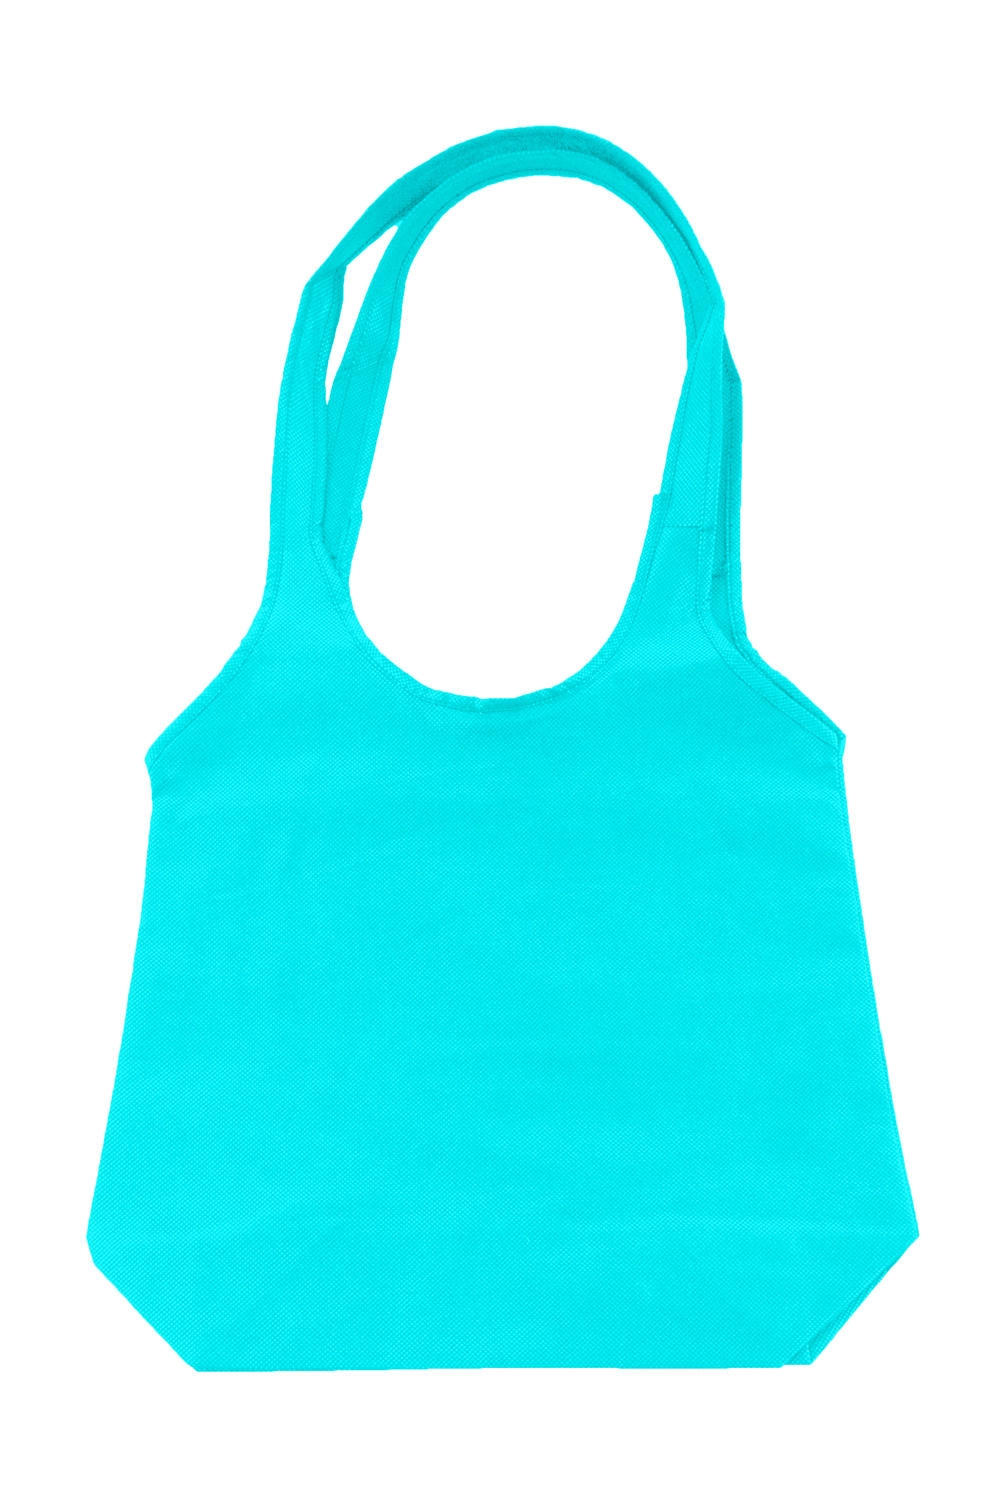 Fashion Shopper zum Besticken und Bedrucken in der Farbe Turquoise mit Ihren Logo, Schriftzug oder Motiv.